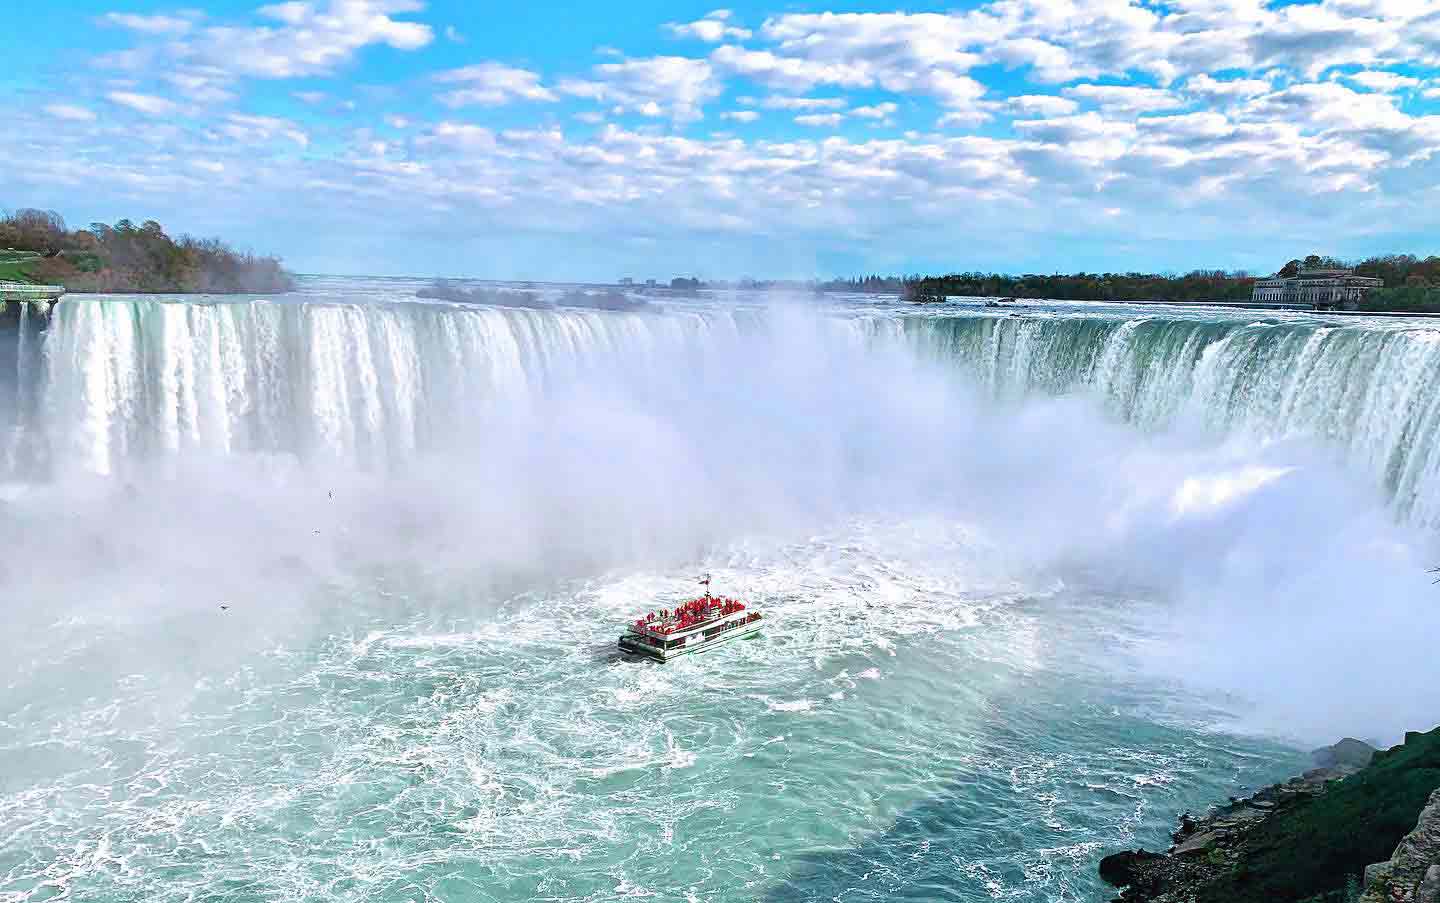 Niagara Falls with boat at base of falls Image